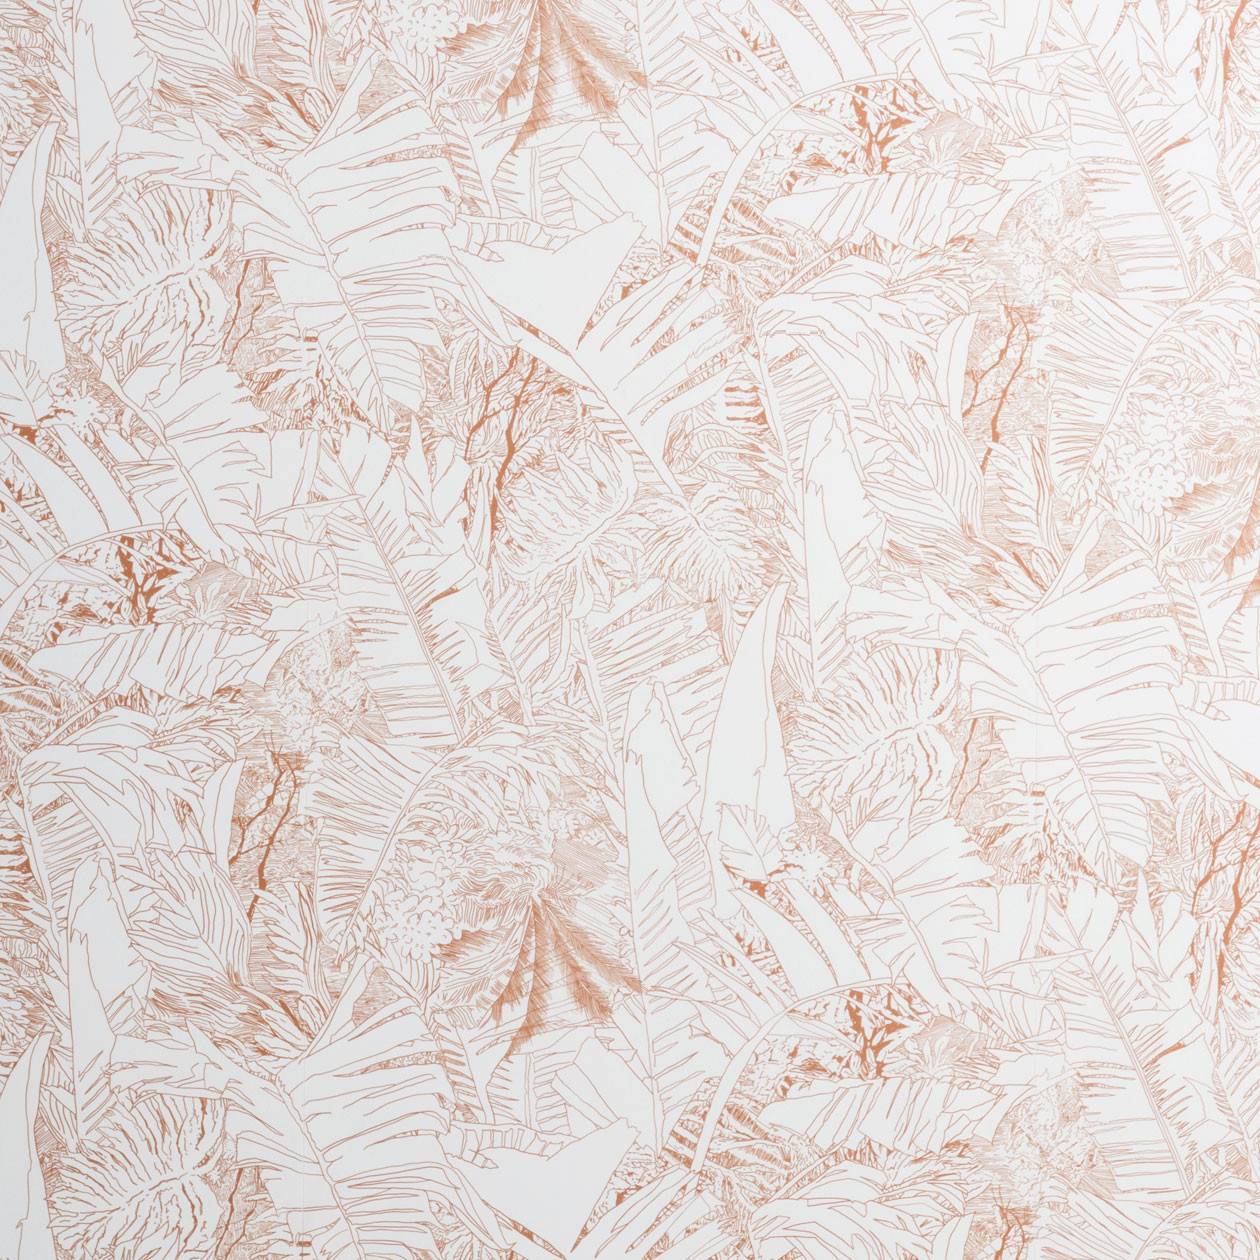 Jungle wallpaper - copper on white - Tiphaine de Bodman